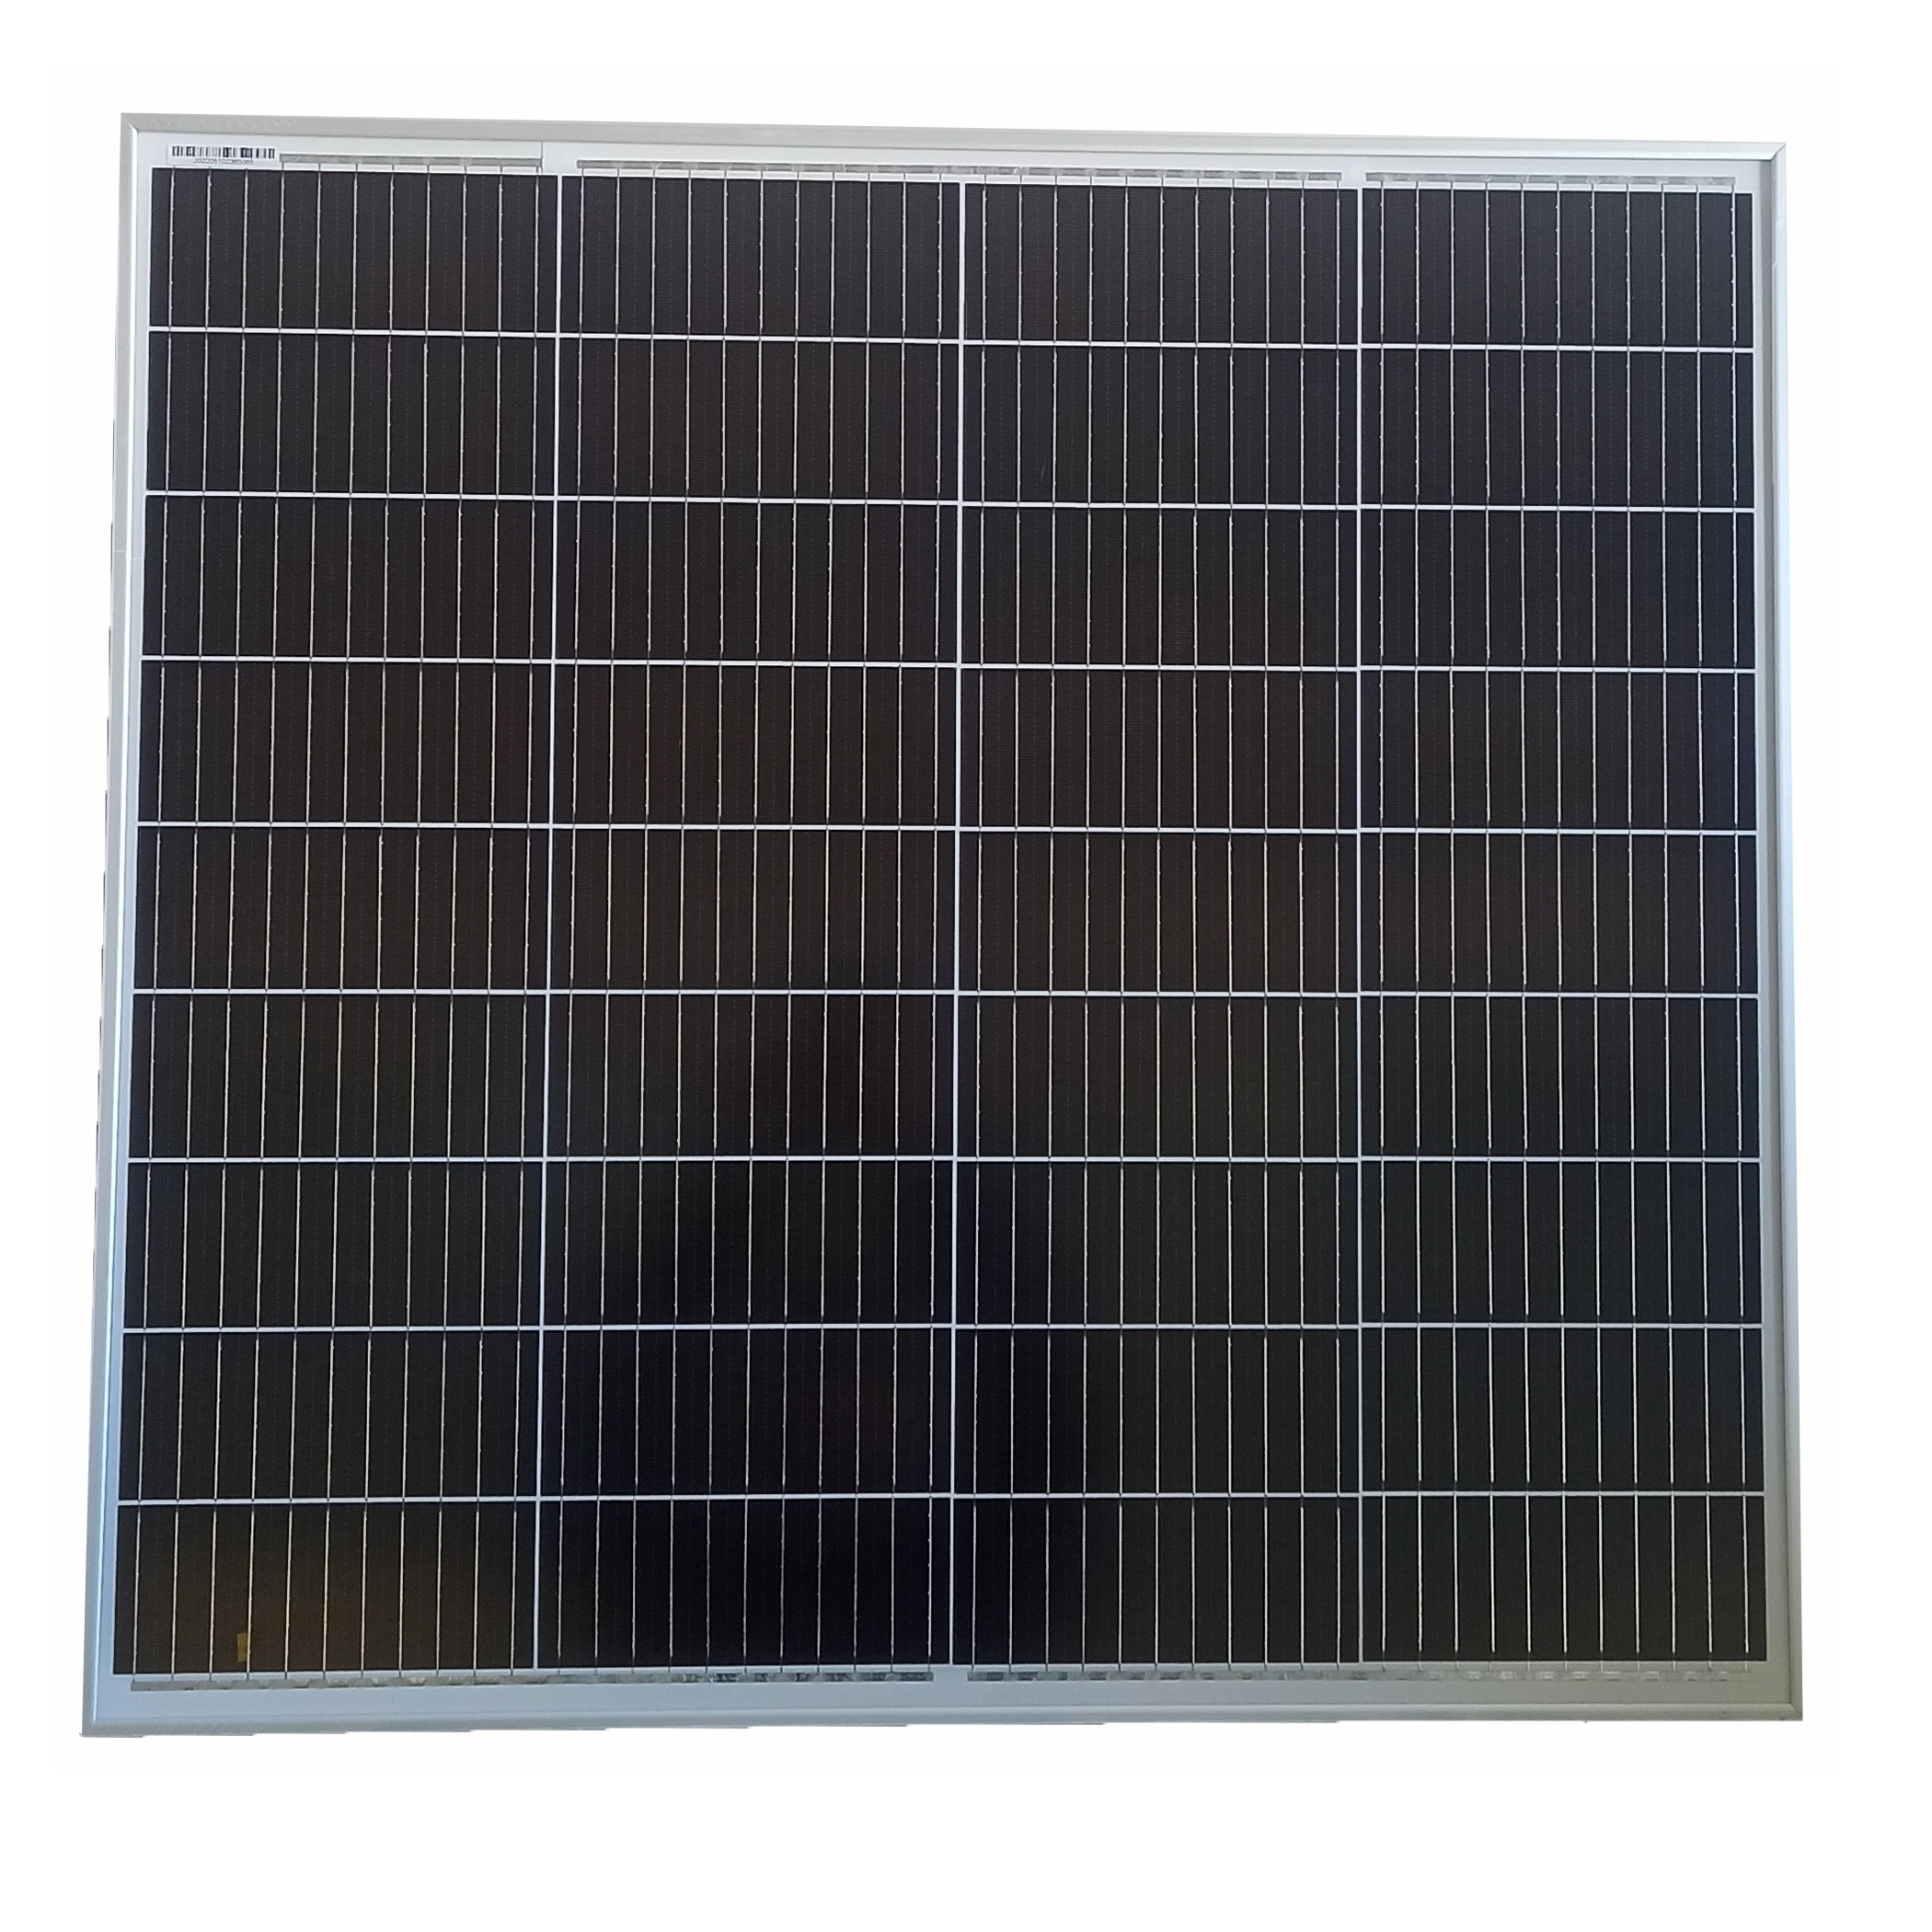 نکته خرید - قیمت روز پنل خورشیدی سان پل مدل SP100M-36 ظرفیت 100 وات خرید